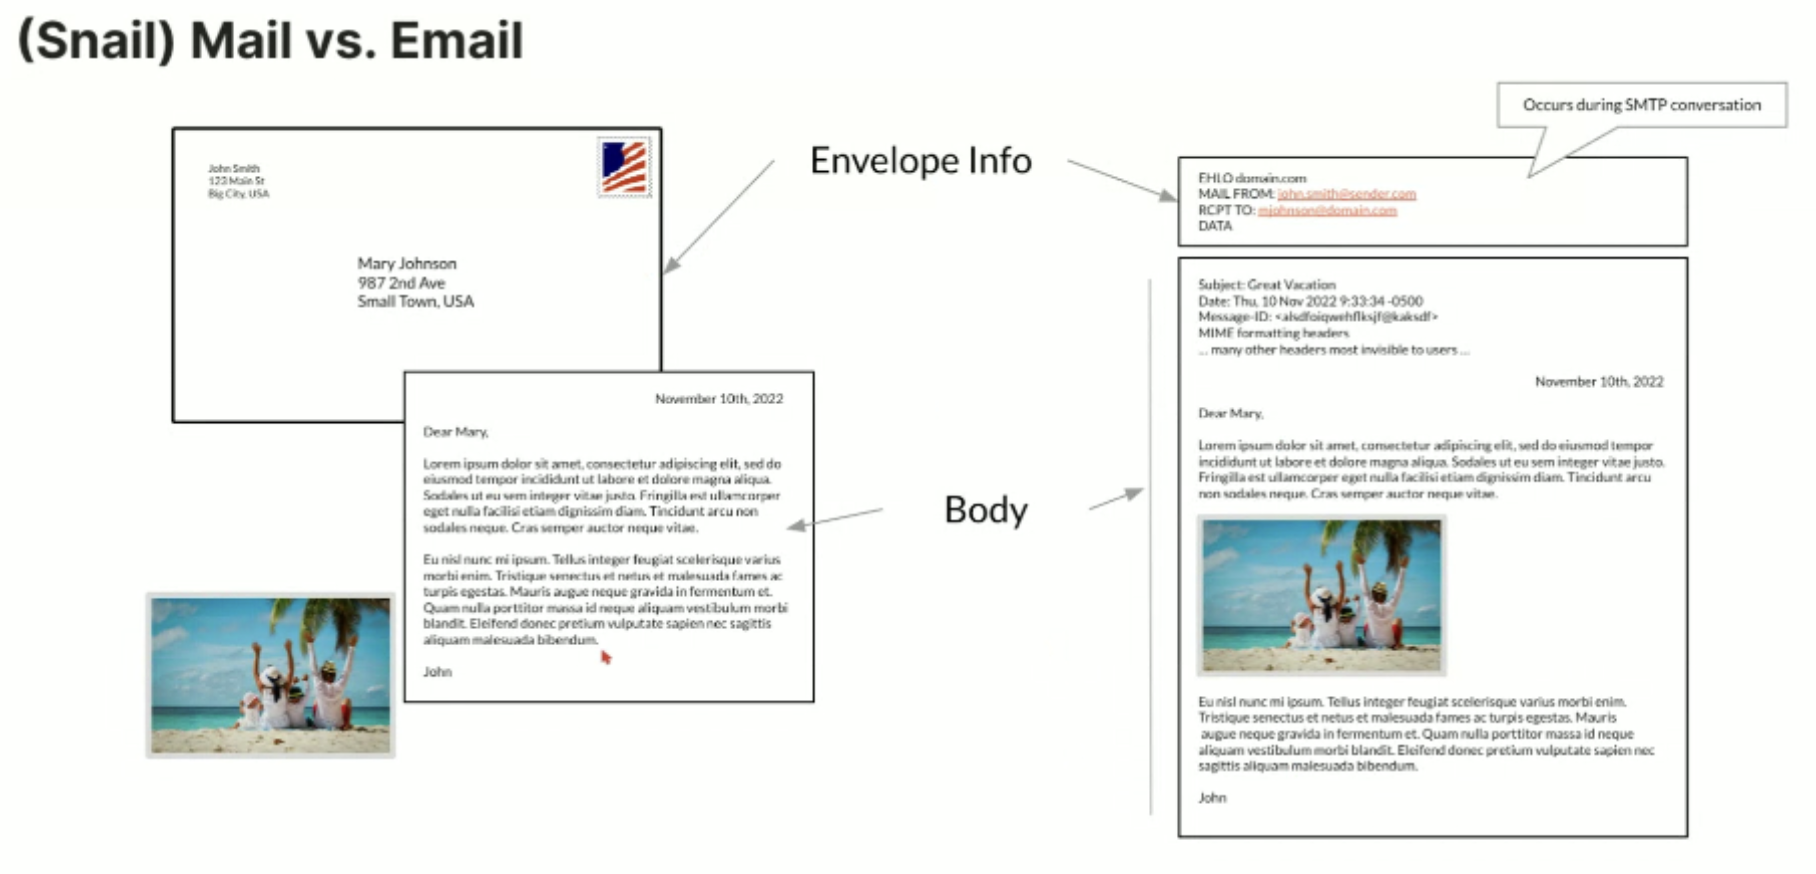 Comparação entre correio tradicional e e-mail